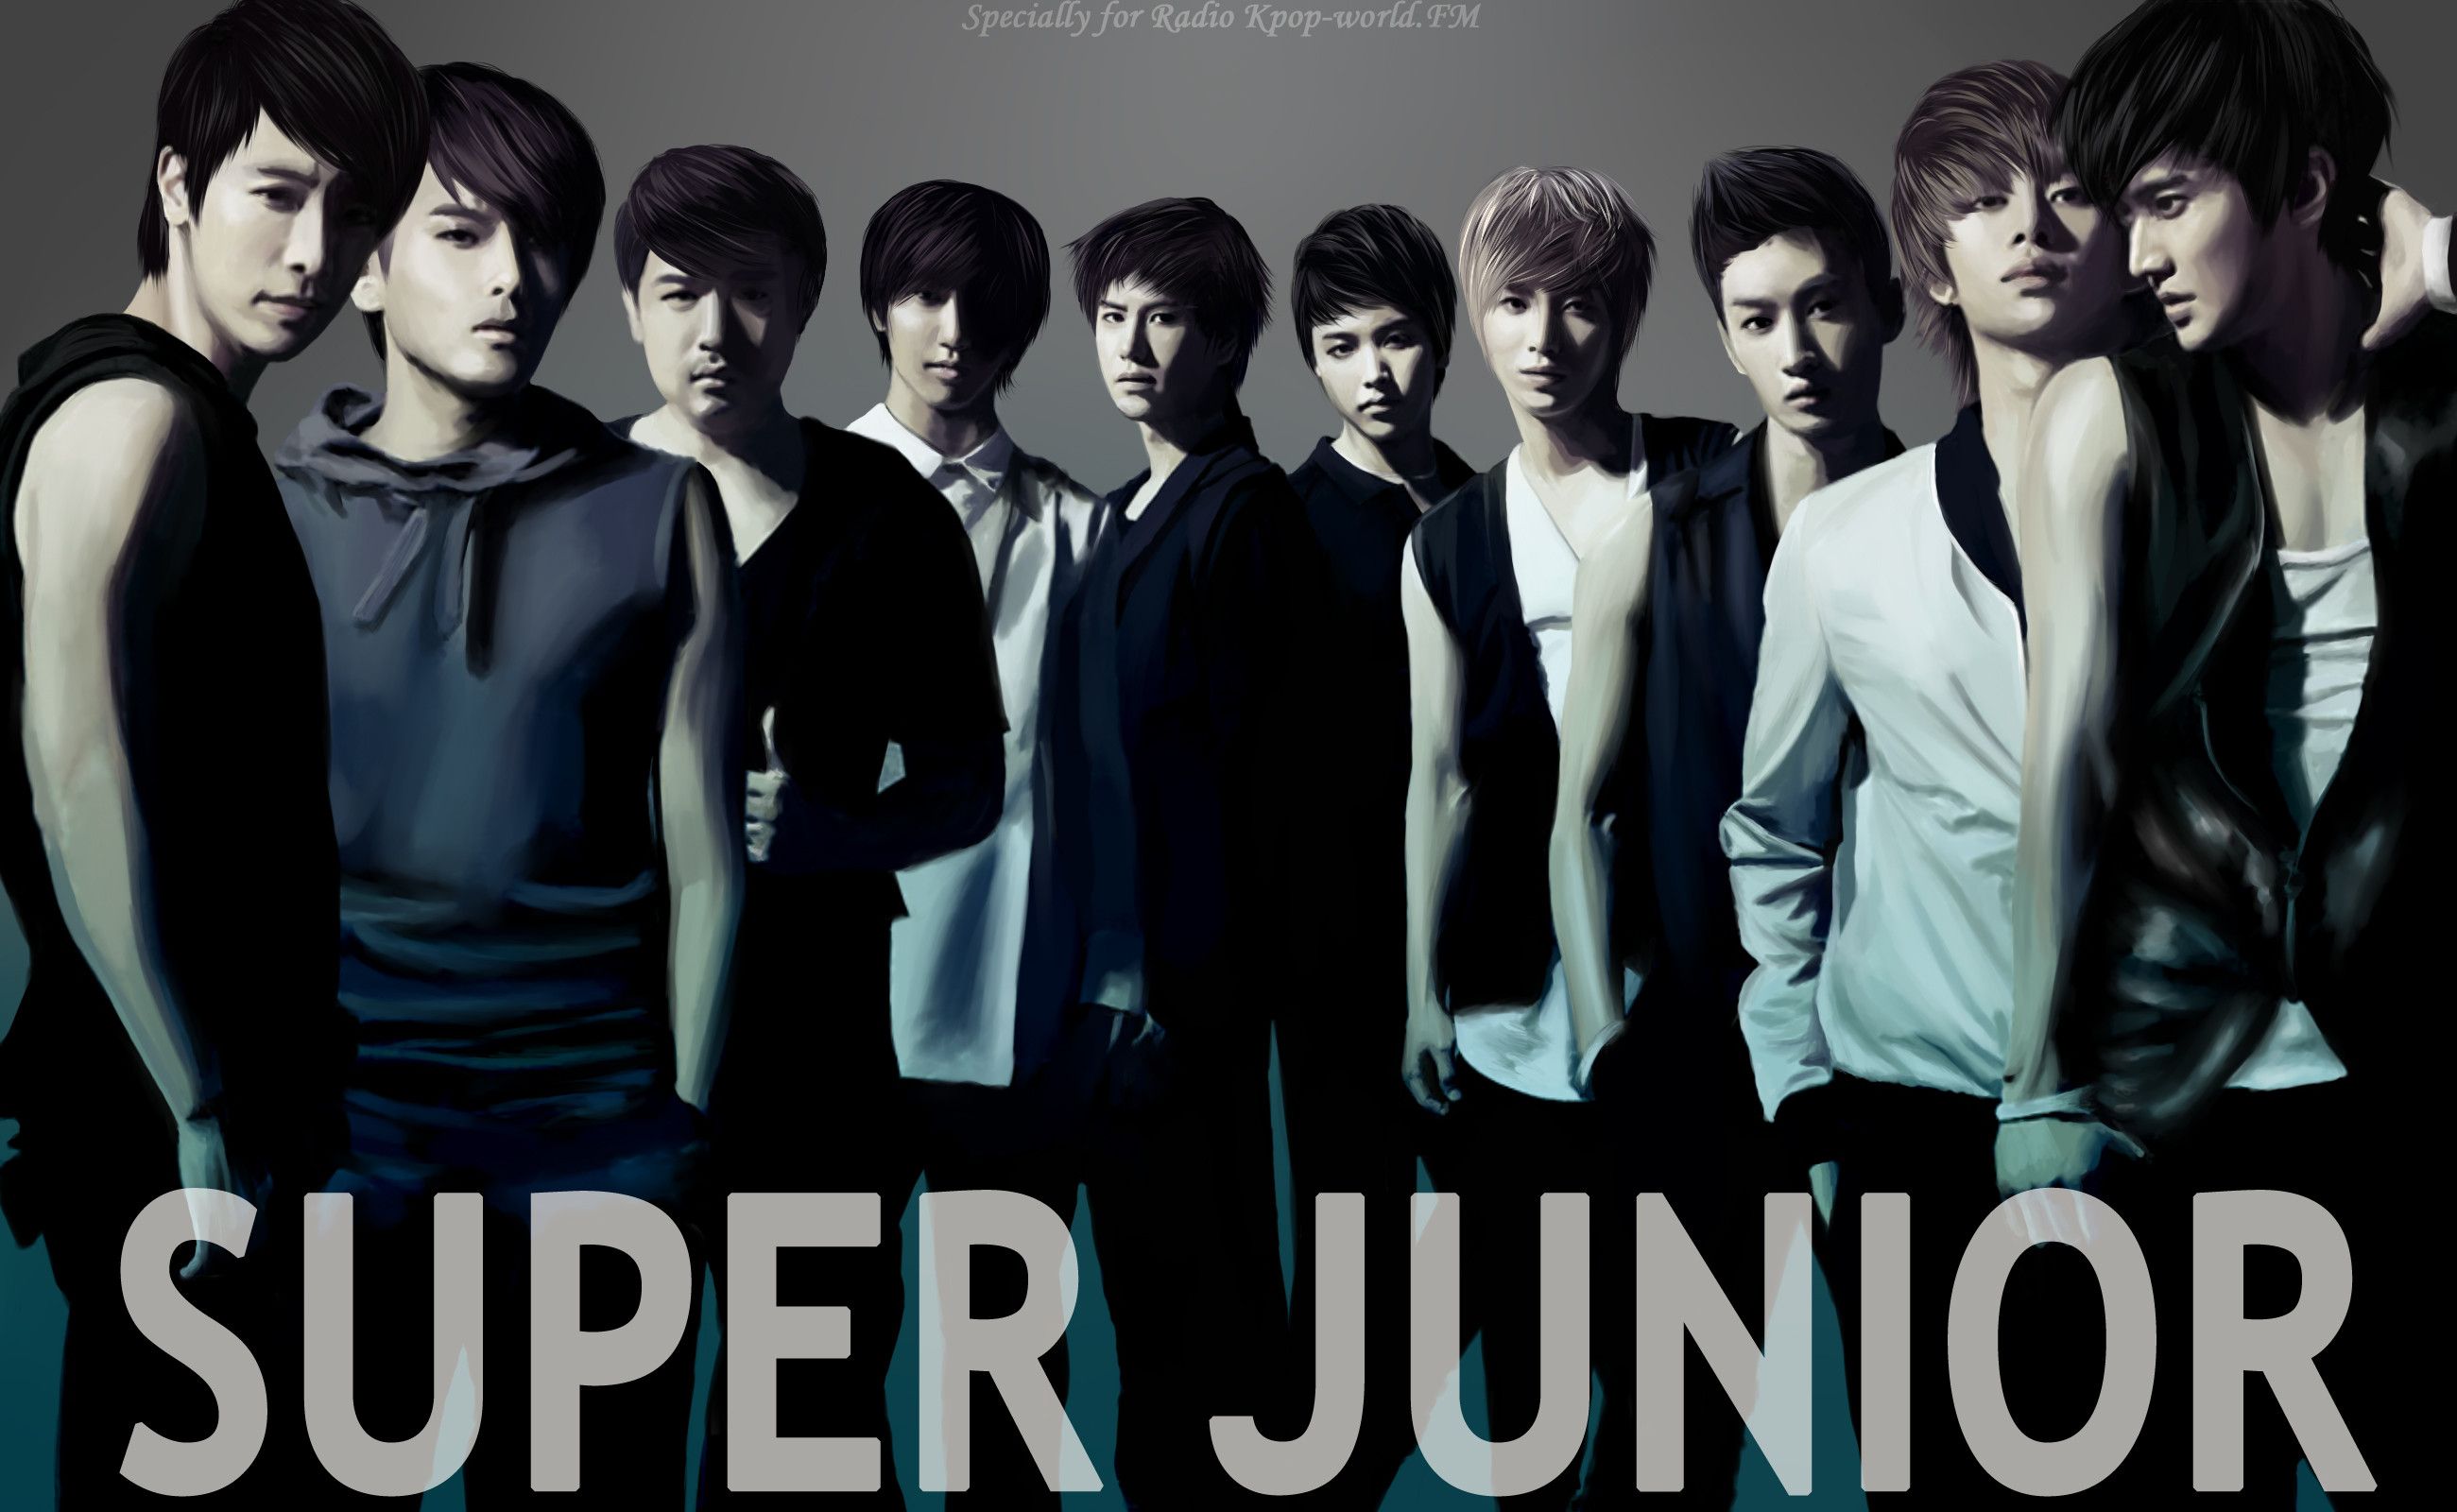 Free Download Super Junior Wallpaper Id - Poster De Super Junior , HD Wallpaper & Backgrounds